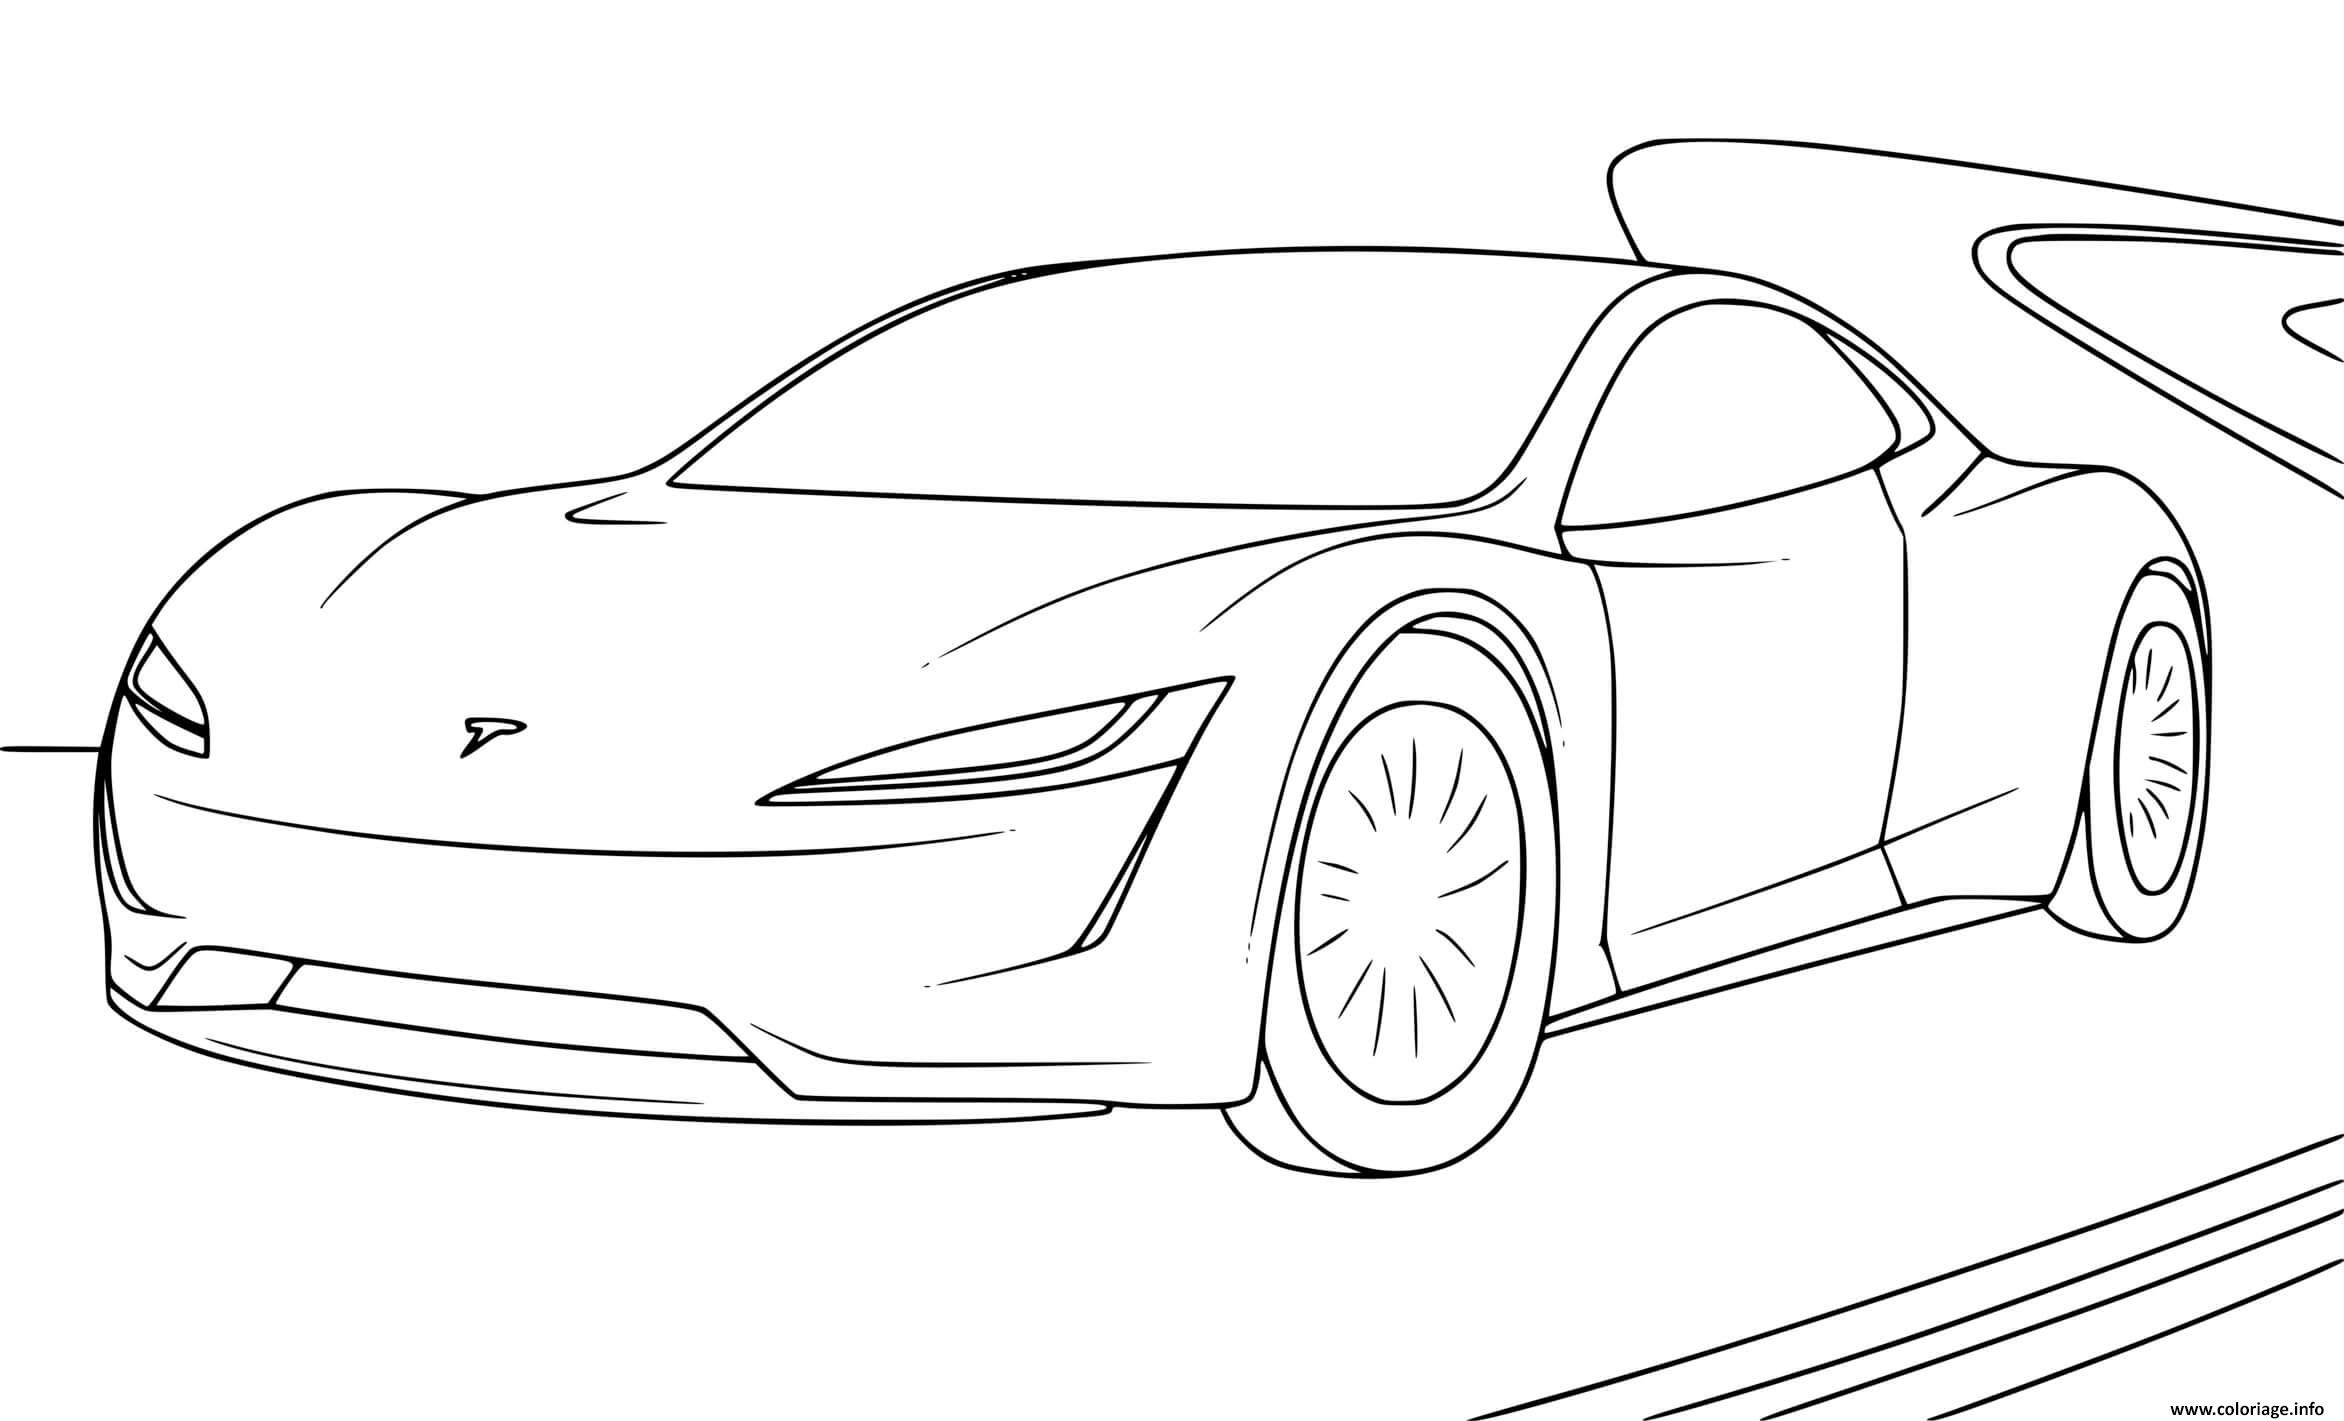 Dessin voiture Tesla Roadster Coloriage Gratuit à Imprimer